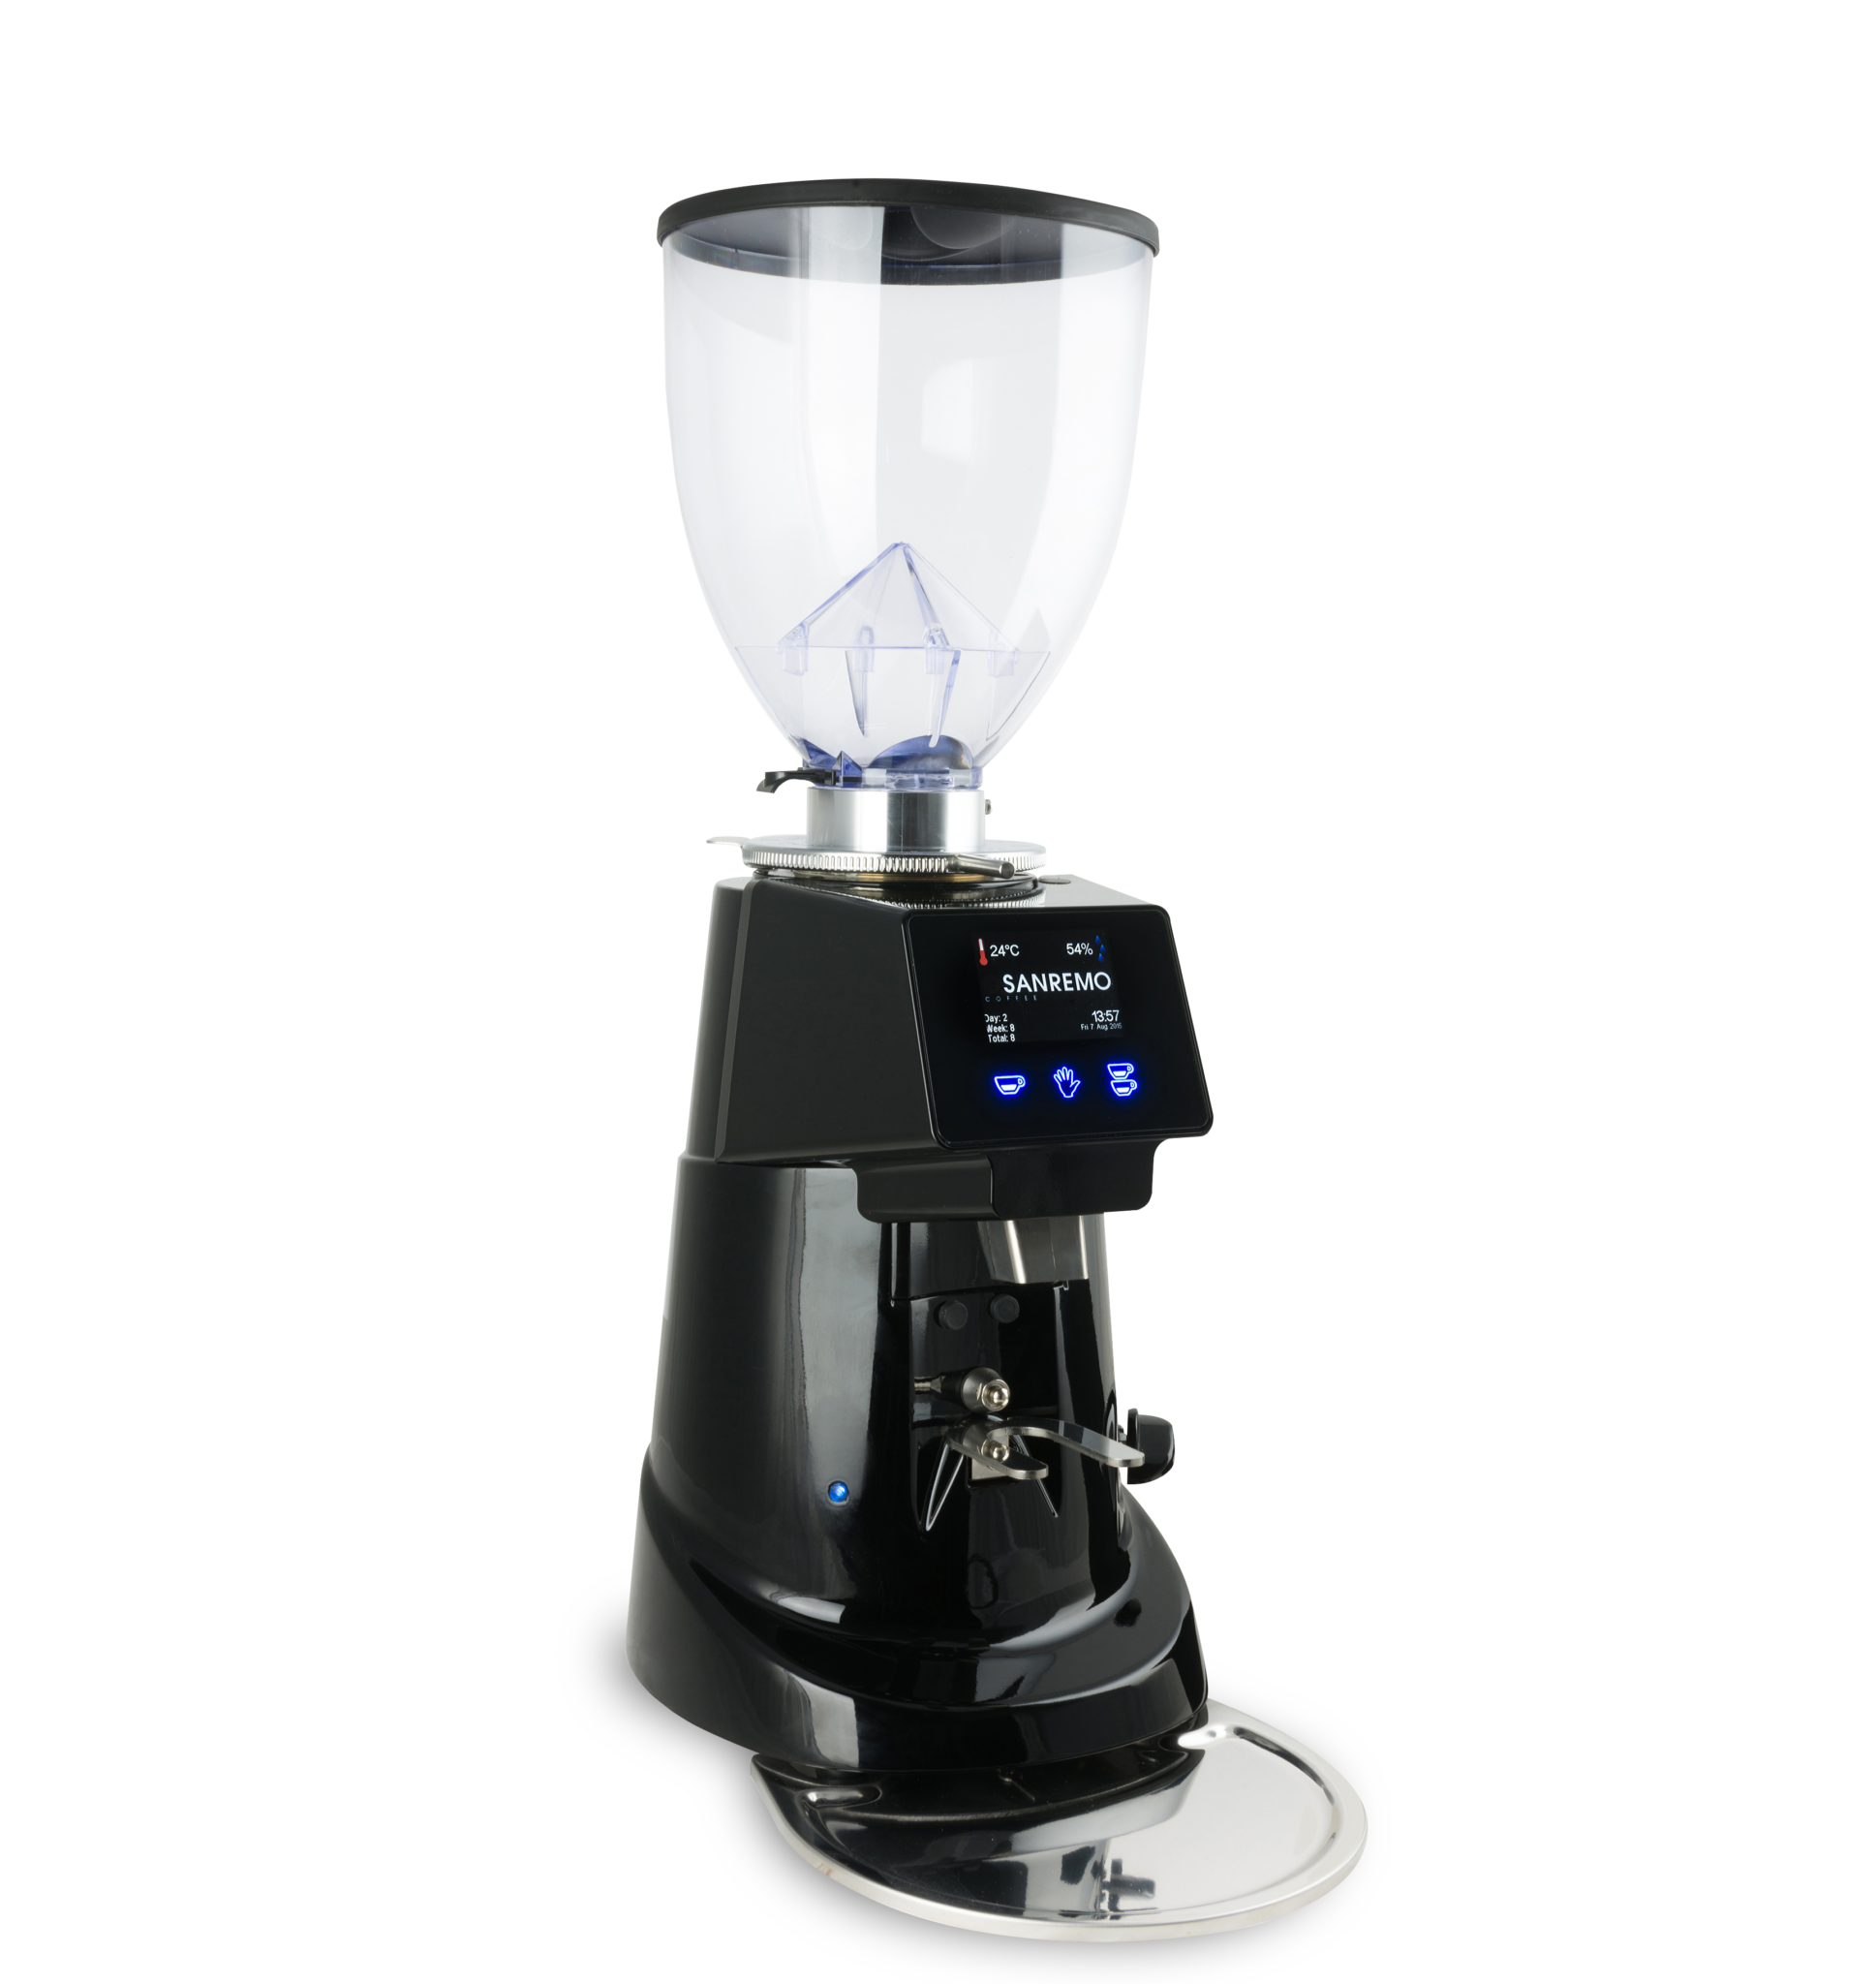 On-demand Coffee Grinder Machine - San Remo SR50